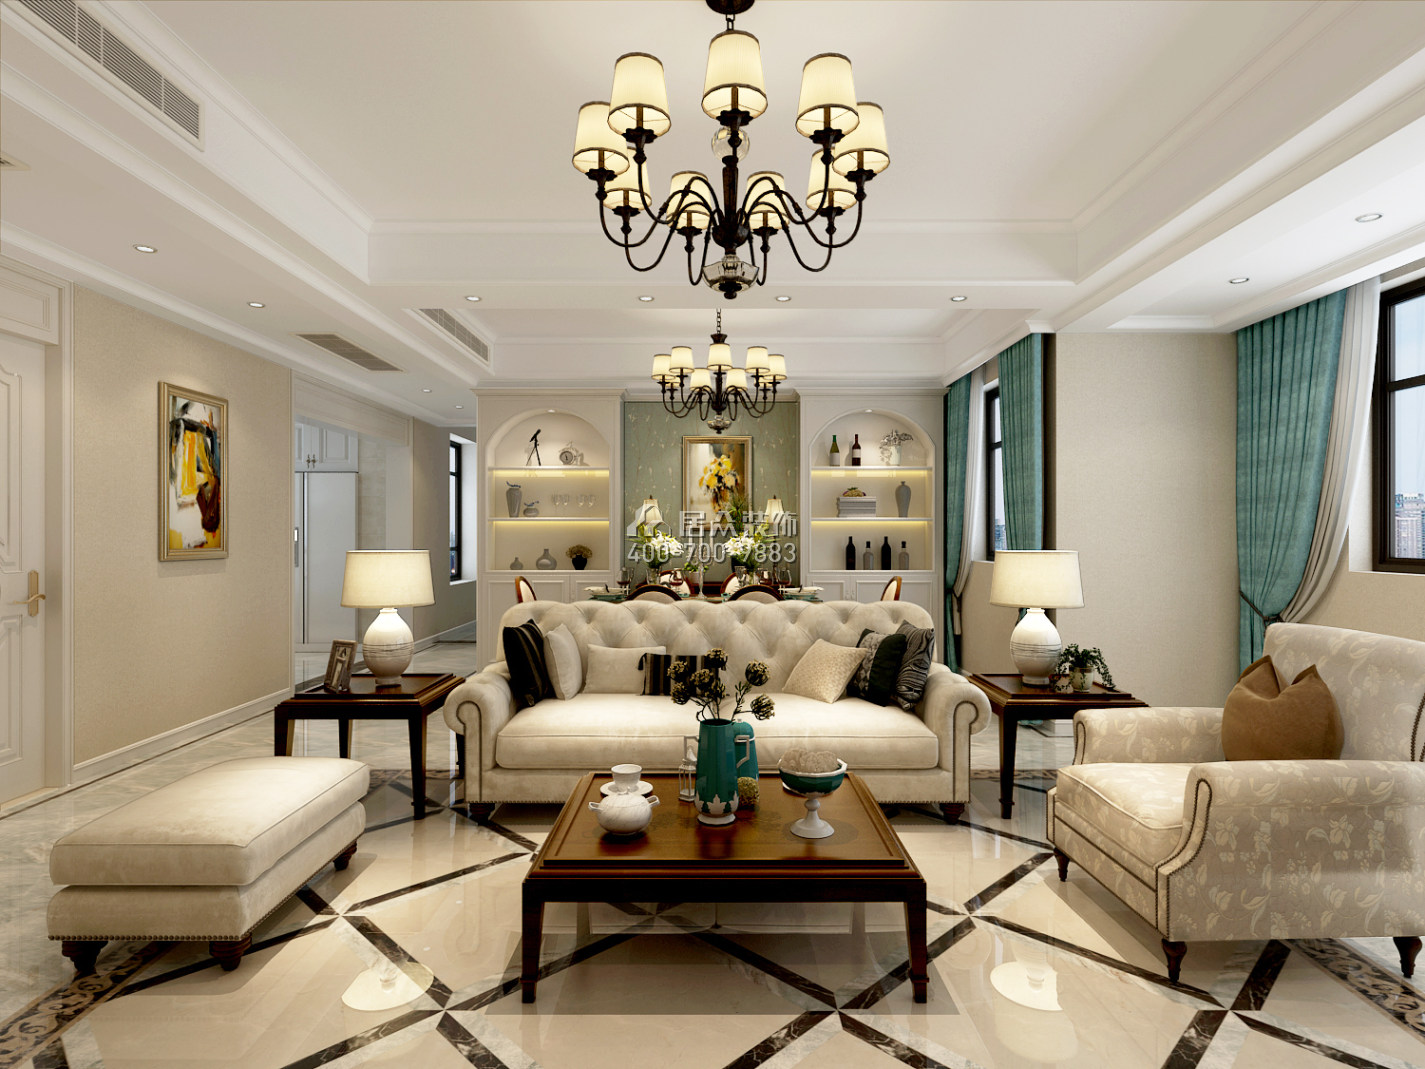 紫御華庭134平方米美式風格平層戶型客廳裝修效果圖